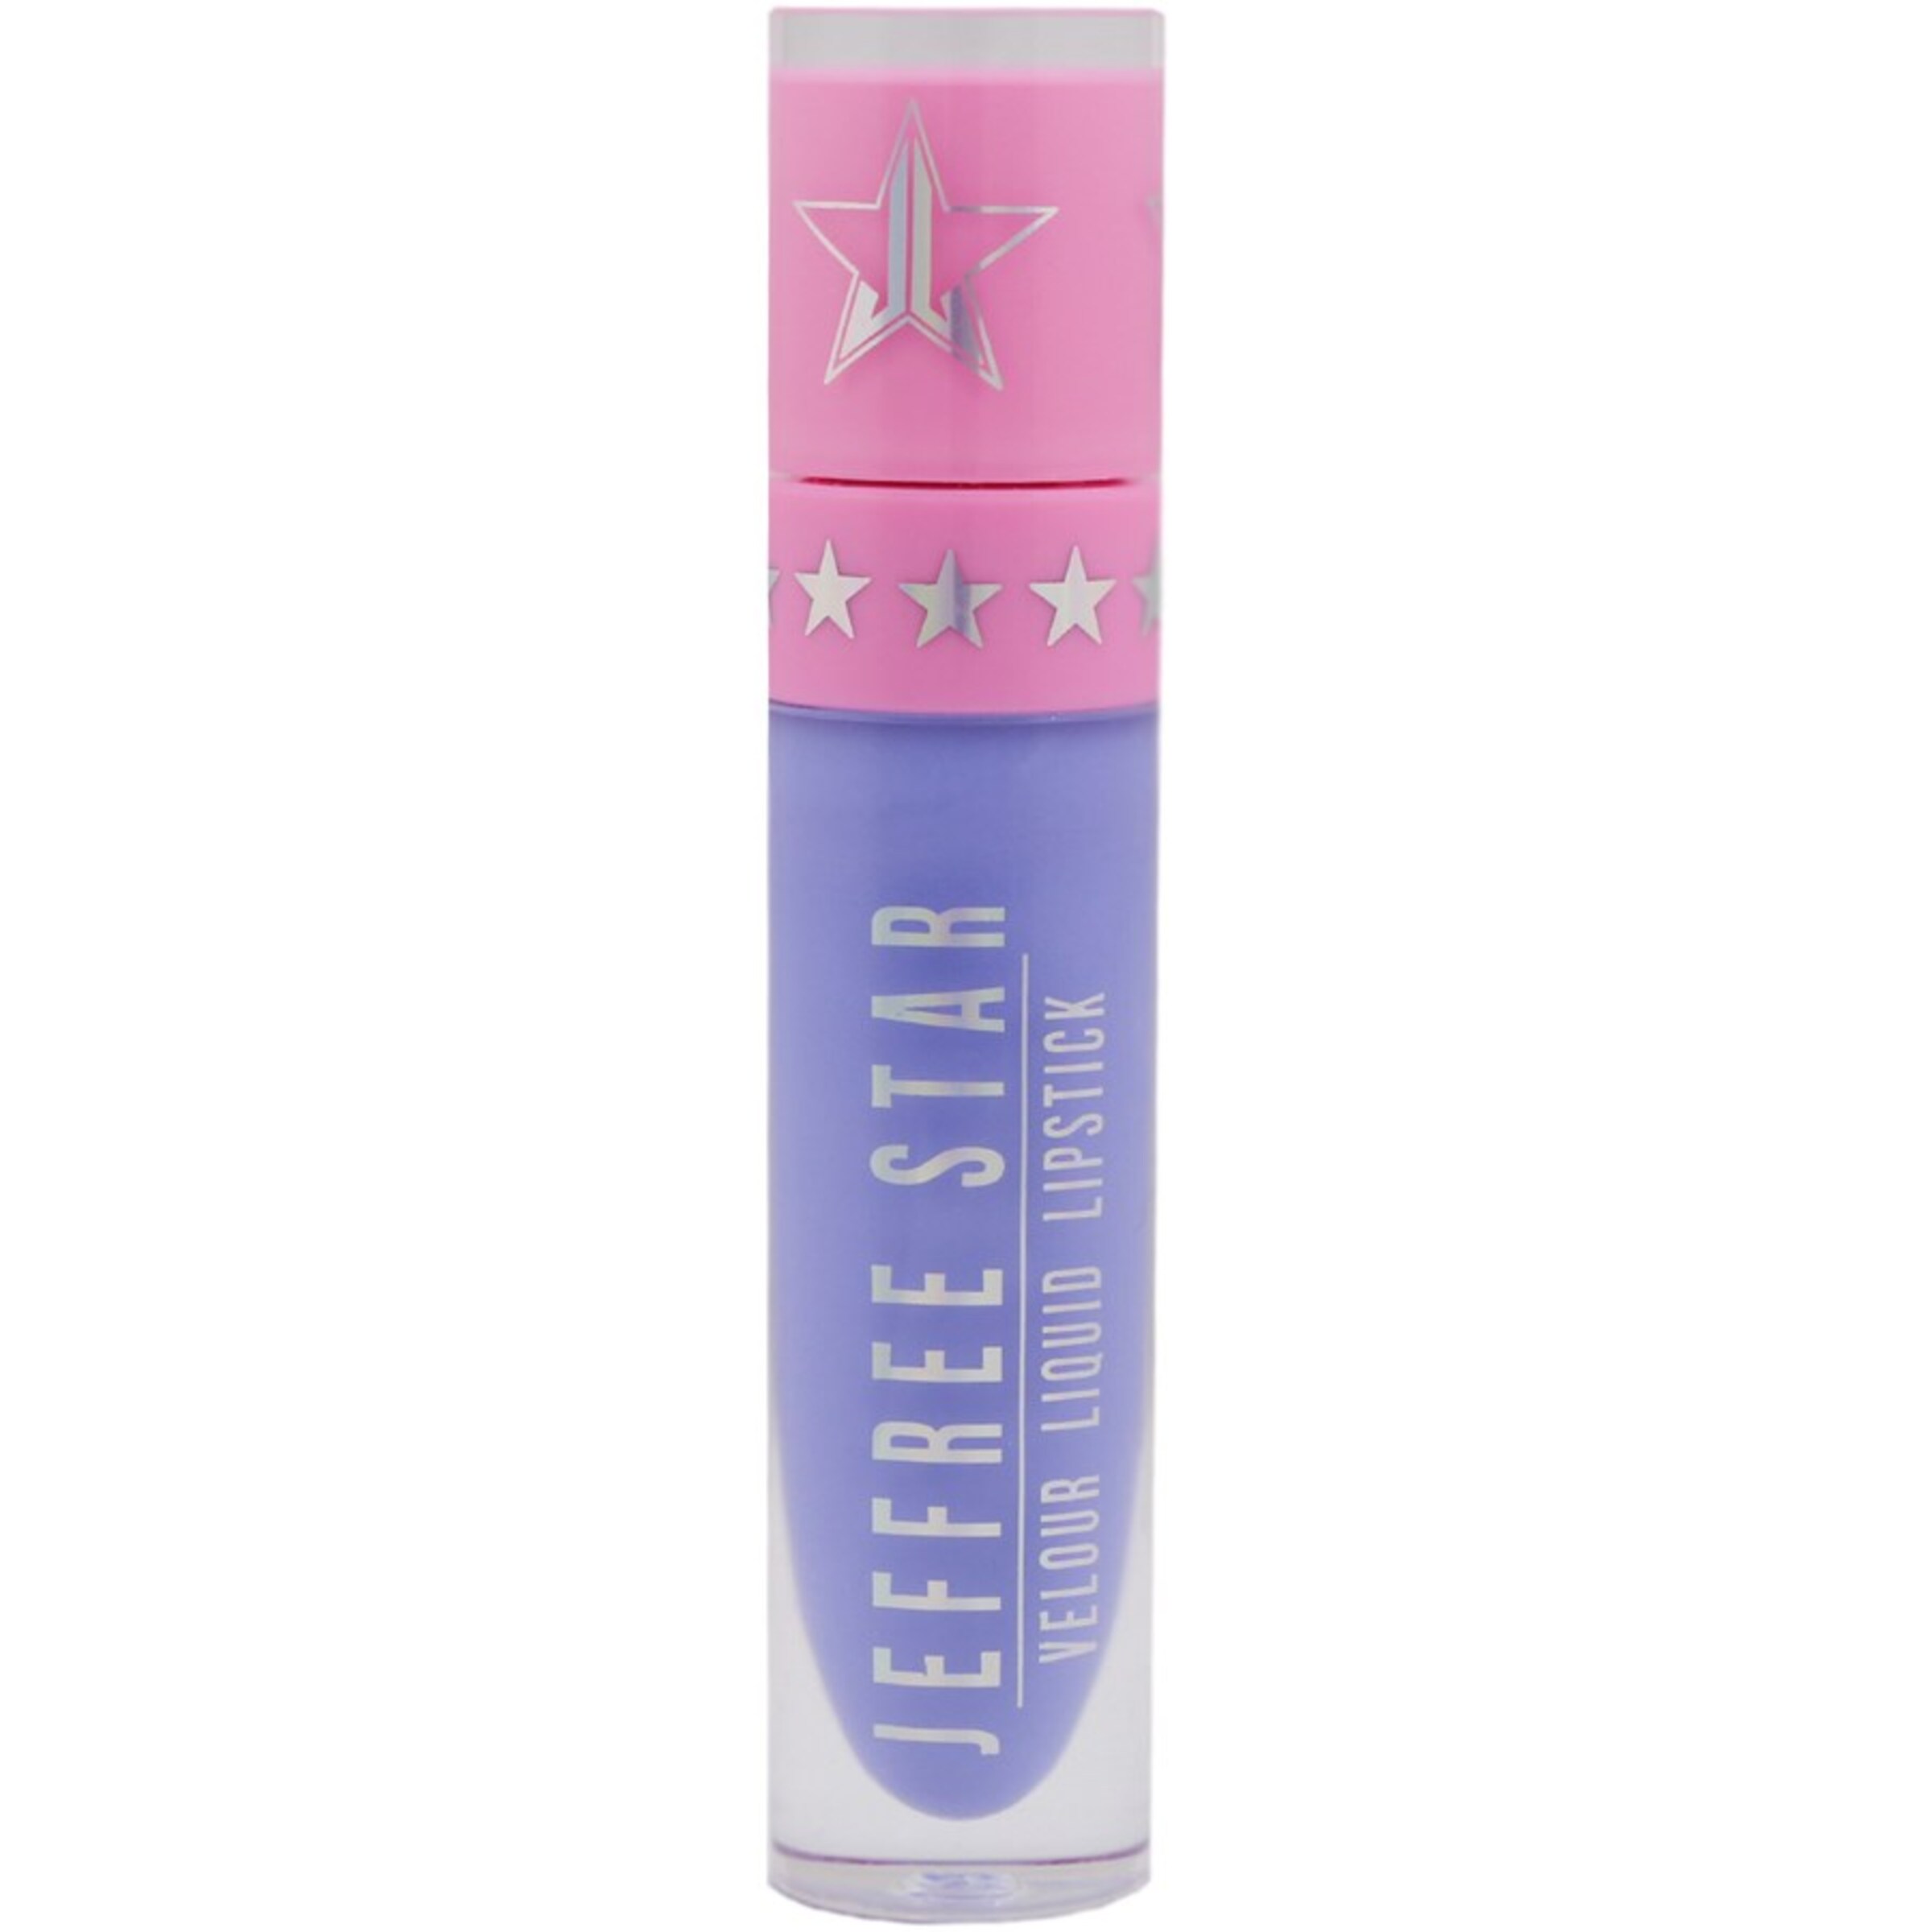 Jeffree Star Cosmetics Lippenstift Velour Liquid in Blau, Lila 